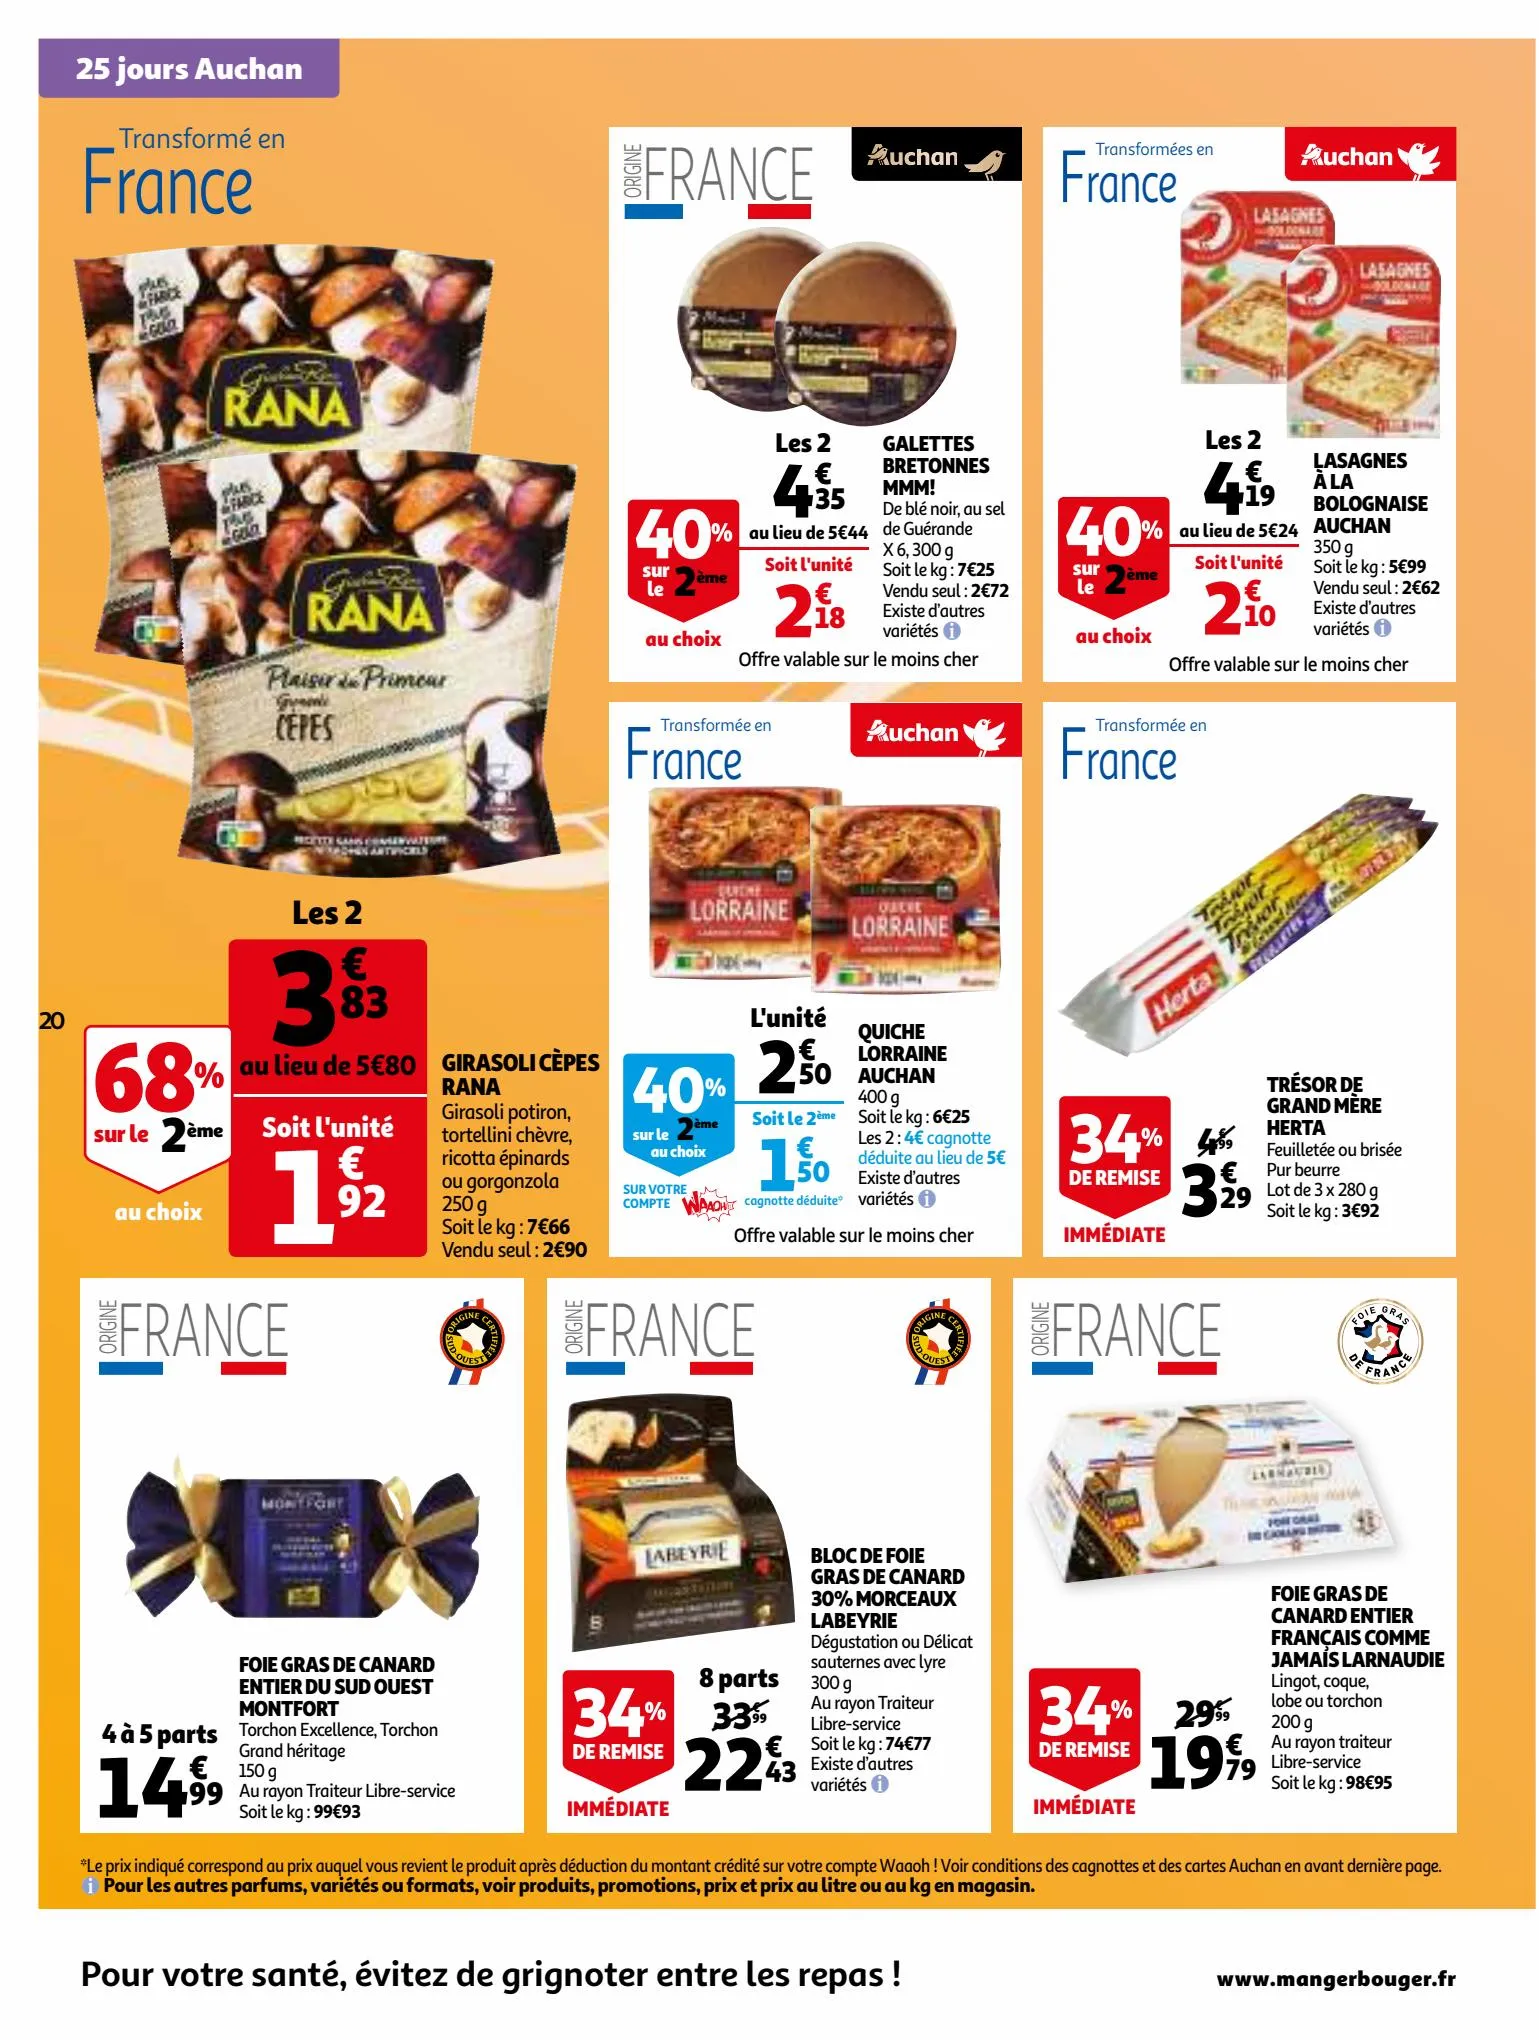 Catalogue 25 jours Auchan, page 00020